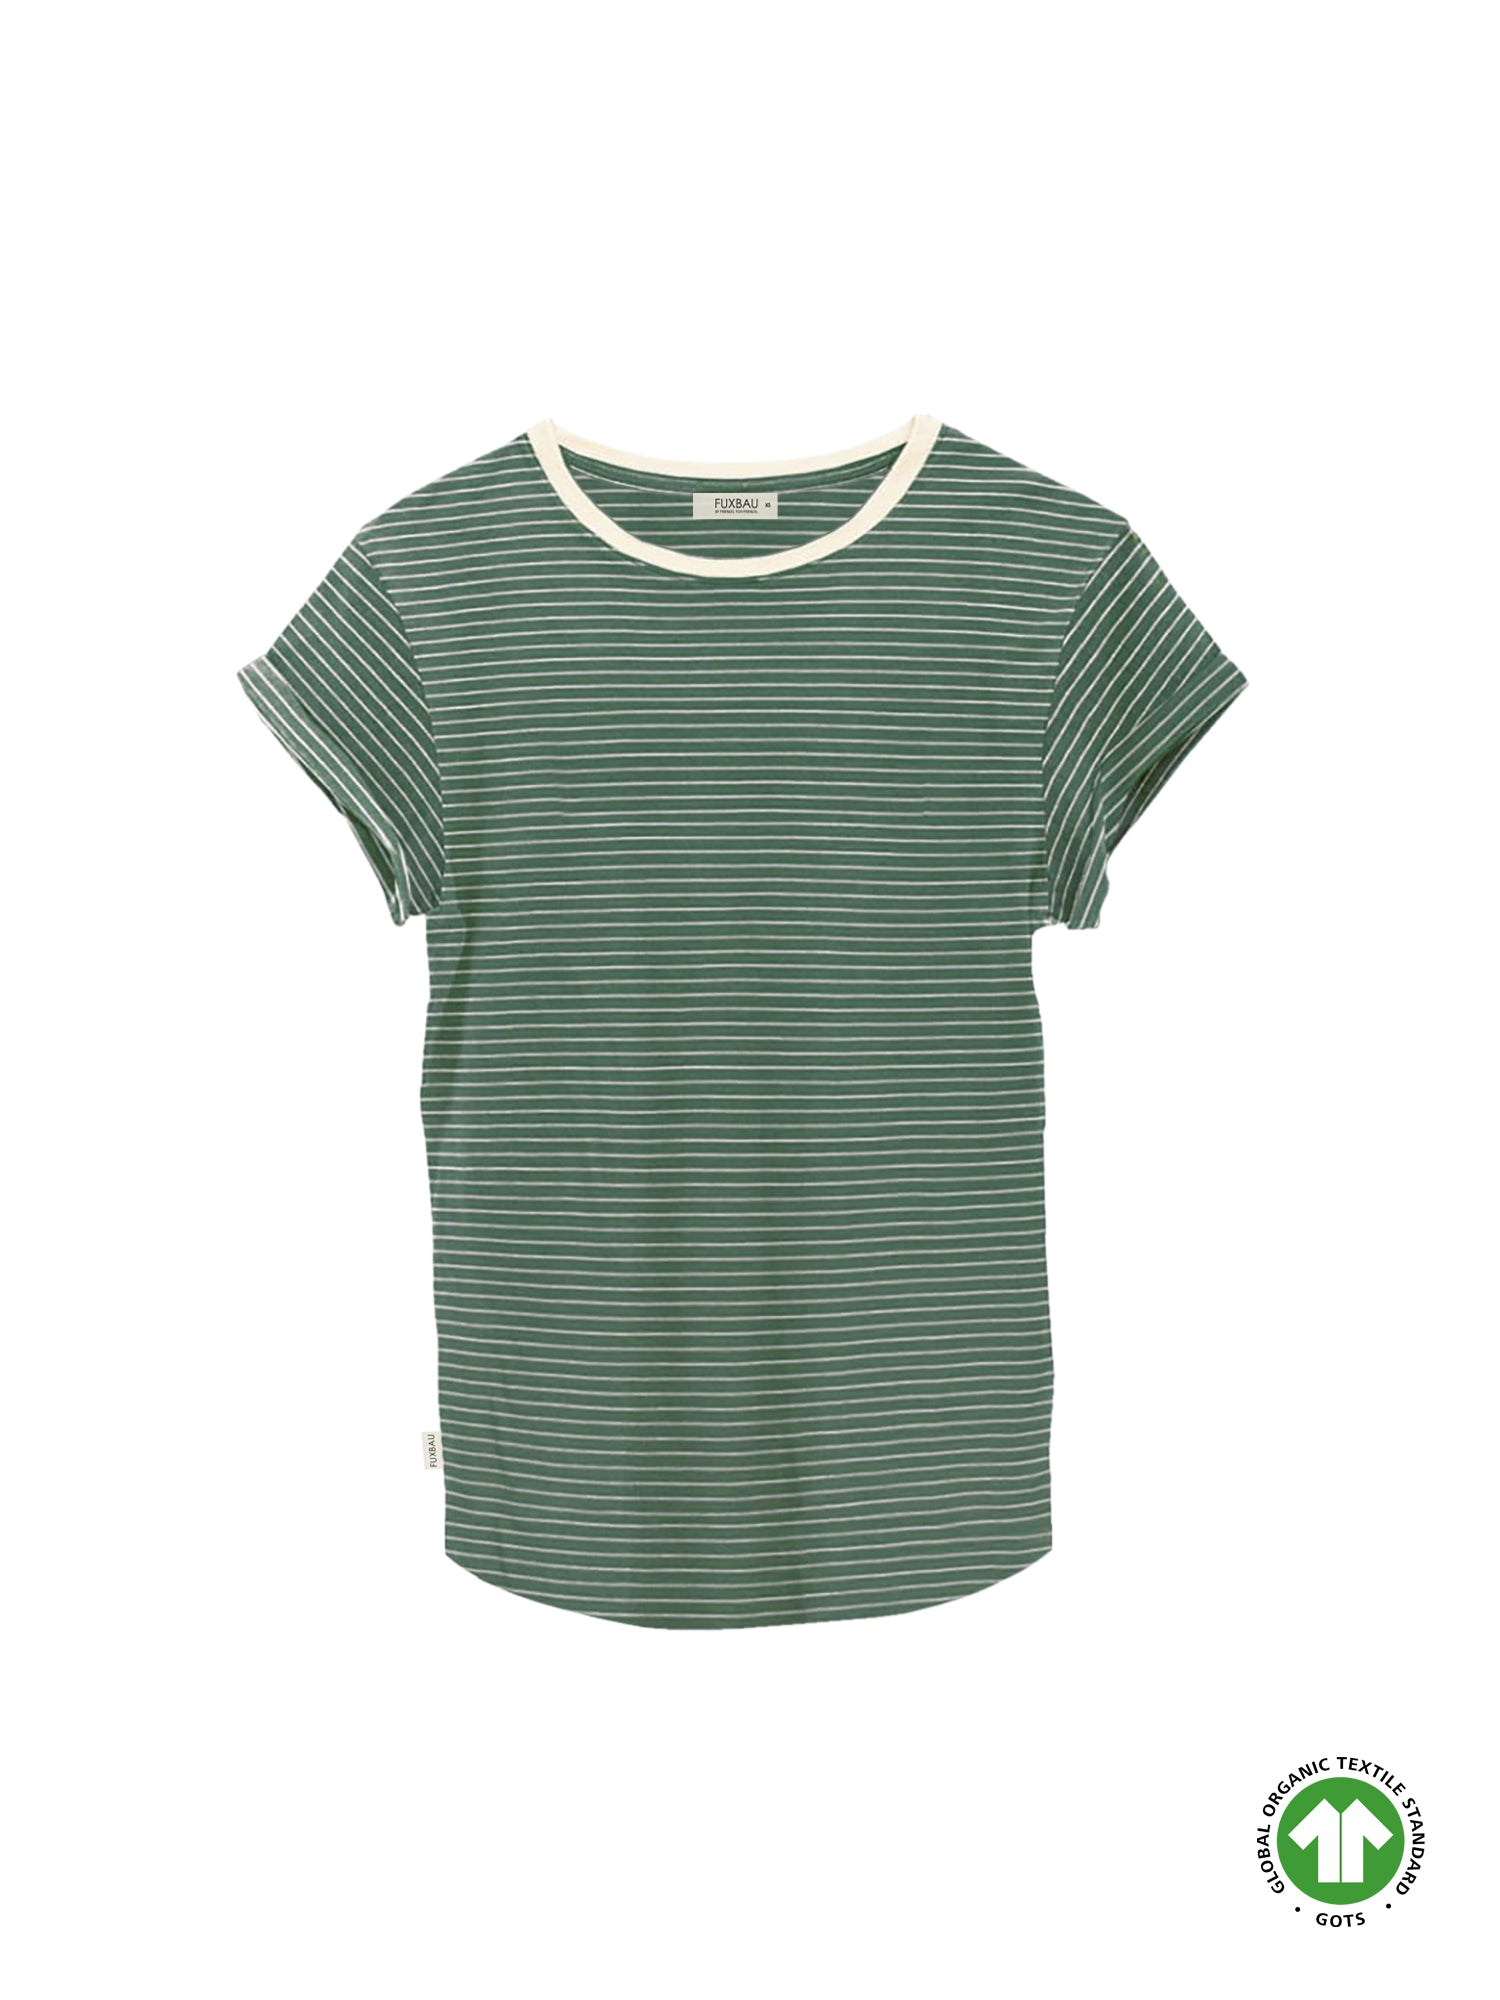 Fair Fashion Frauen Streifenshirt in creme grün aus 100% GOTS zertifizierter Biobaumwolle, fair und nachhaltig in Portugal hergestellt